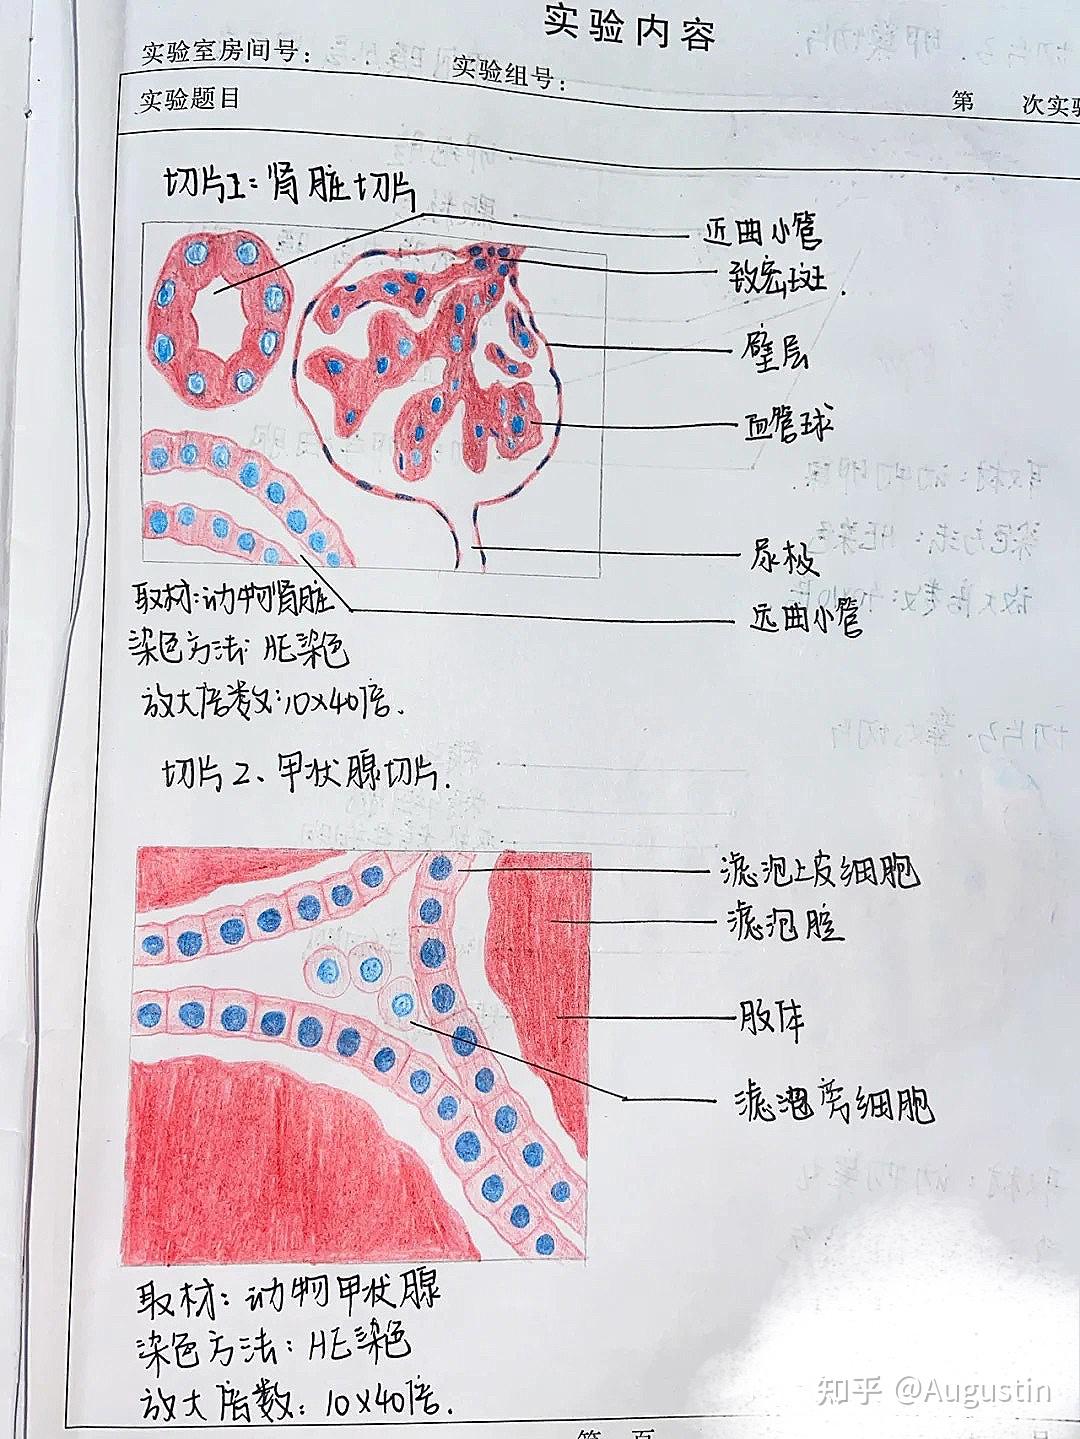 记录下俺的组织学与胚胎学红蓝铅笔手绘图 